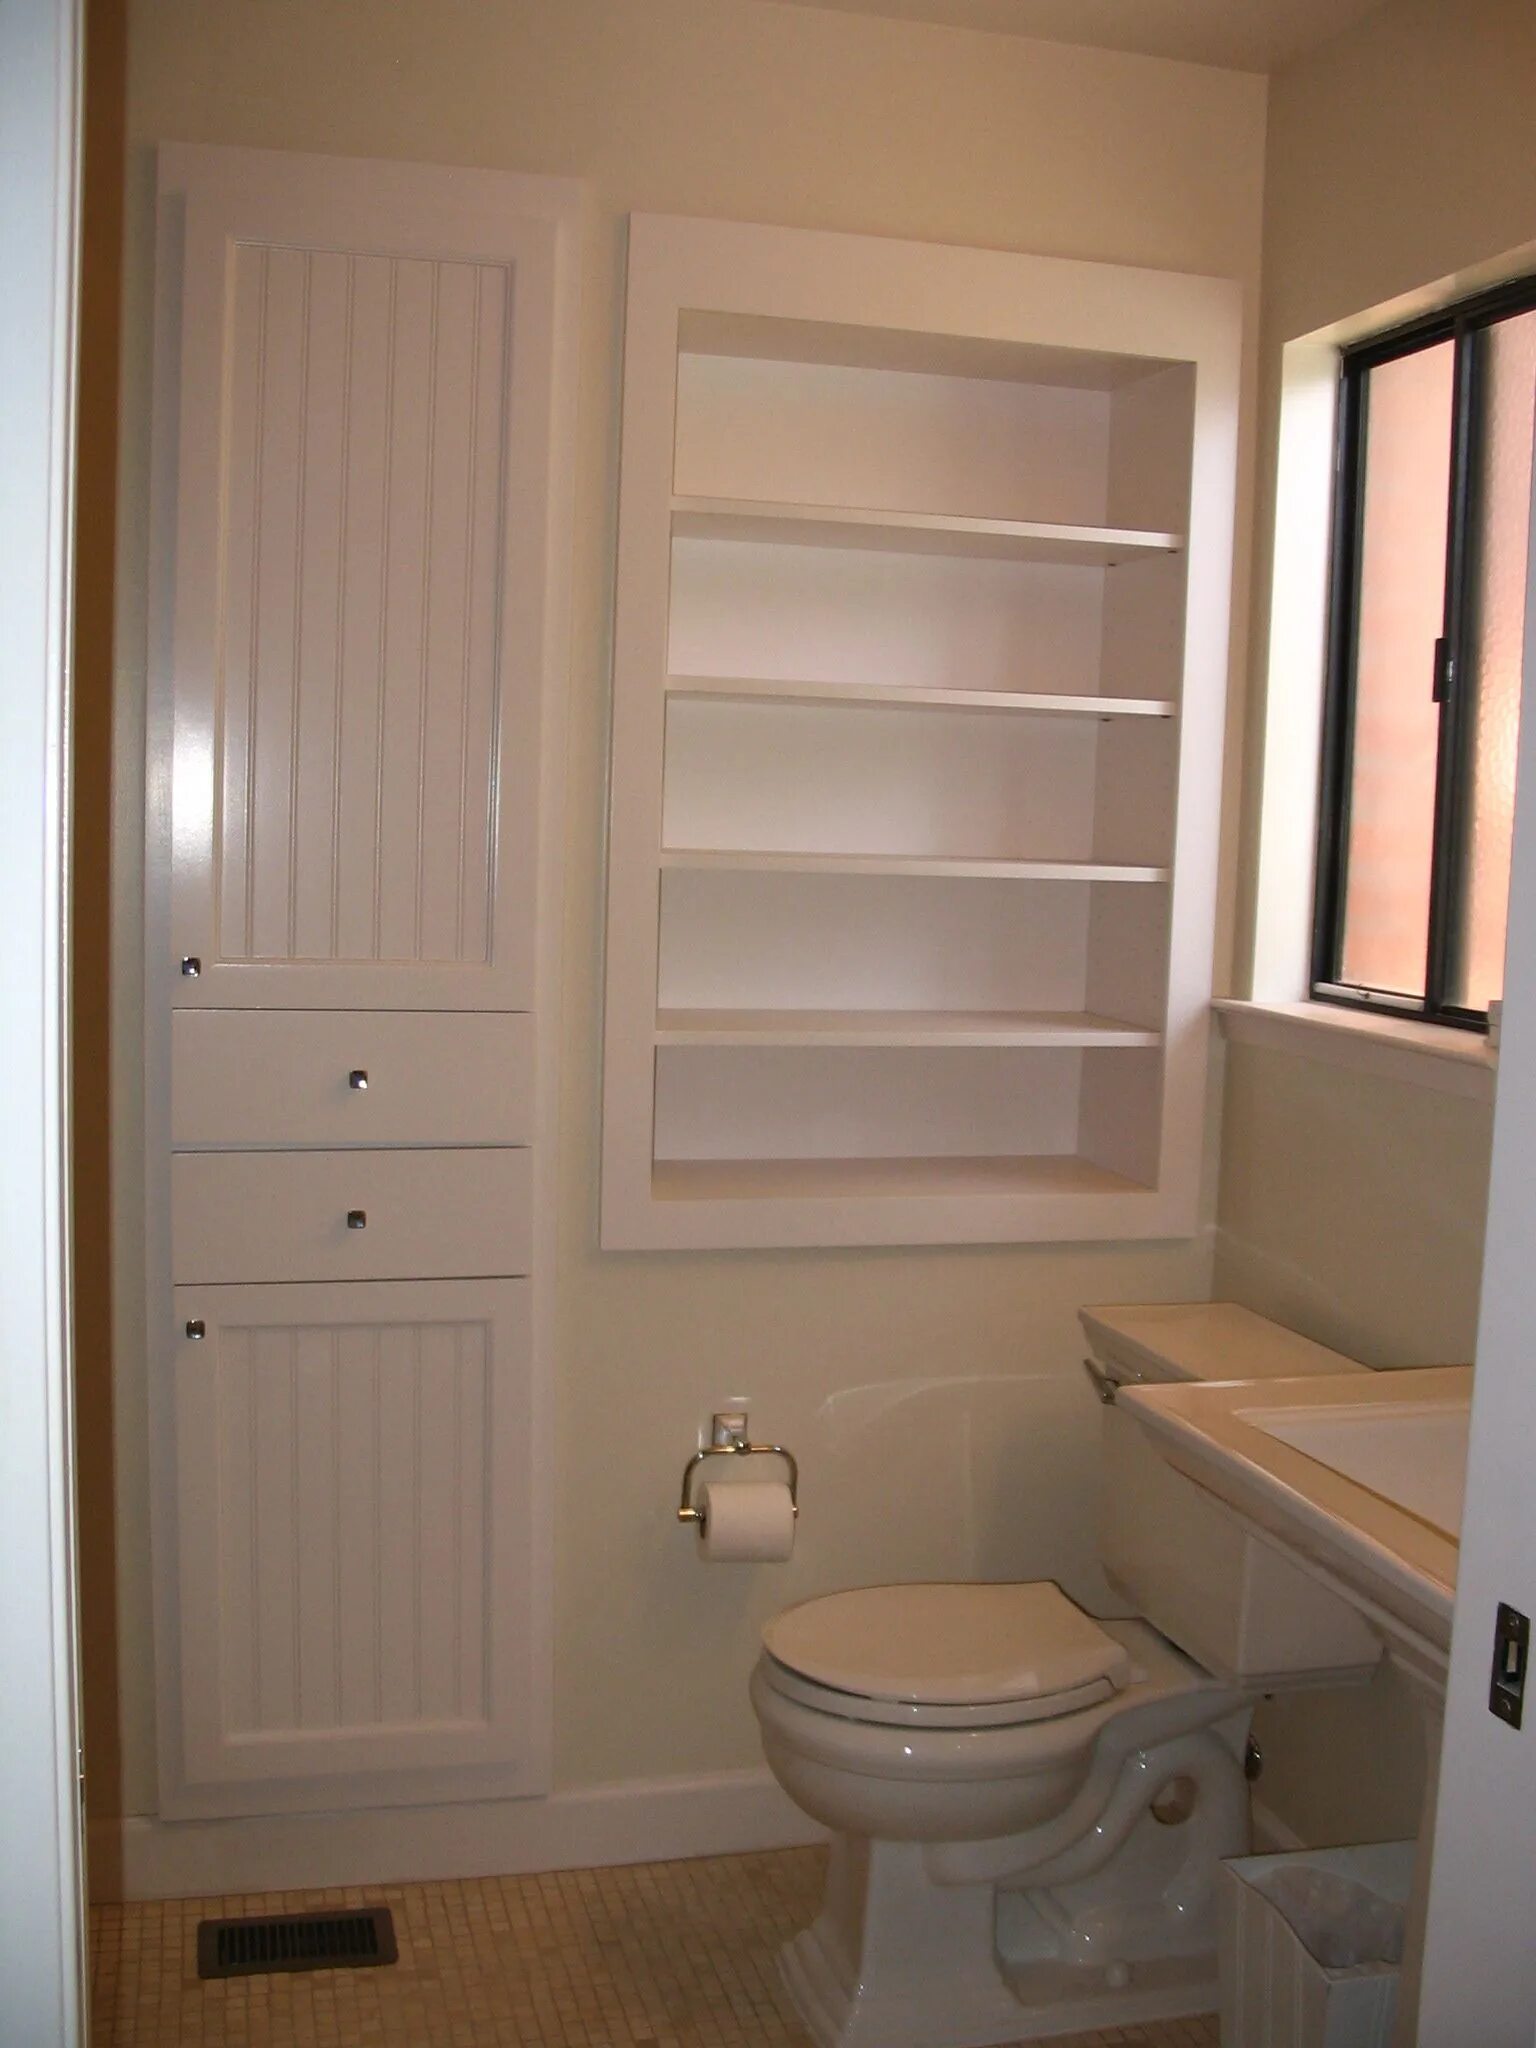 Шкаф в ванной туалете. Встроенный шкаф в ванной. Встроенные шкафчики в ванной. Встроенные шкафы в ванную комнату. Встраиваемый шкаф в ванной.